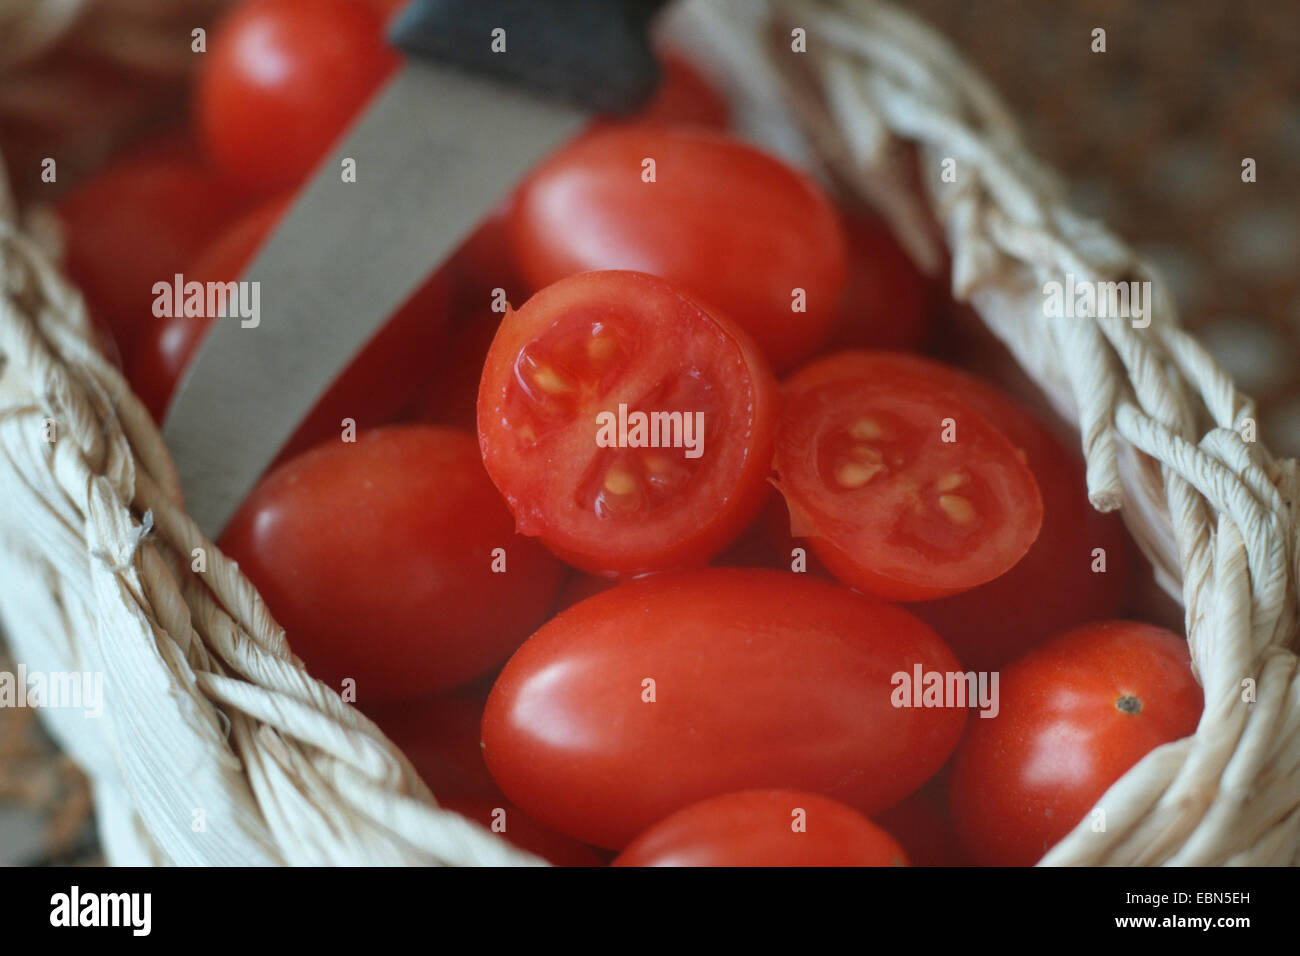 Cherry tomate (Lycopersicon esculentum var. cerasiforme) Tomates Cerise, couché dans un panier avec un couteau de cuisine Banque D'Images